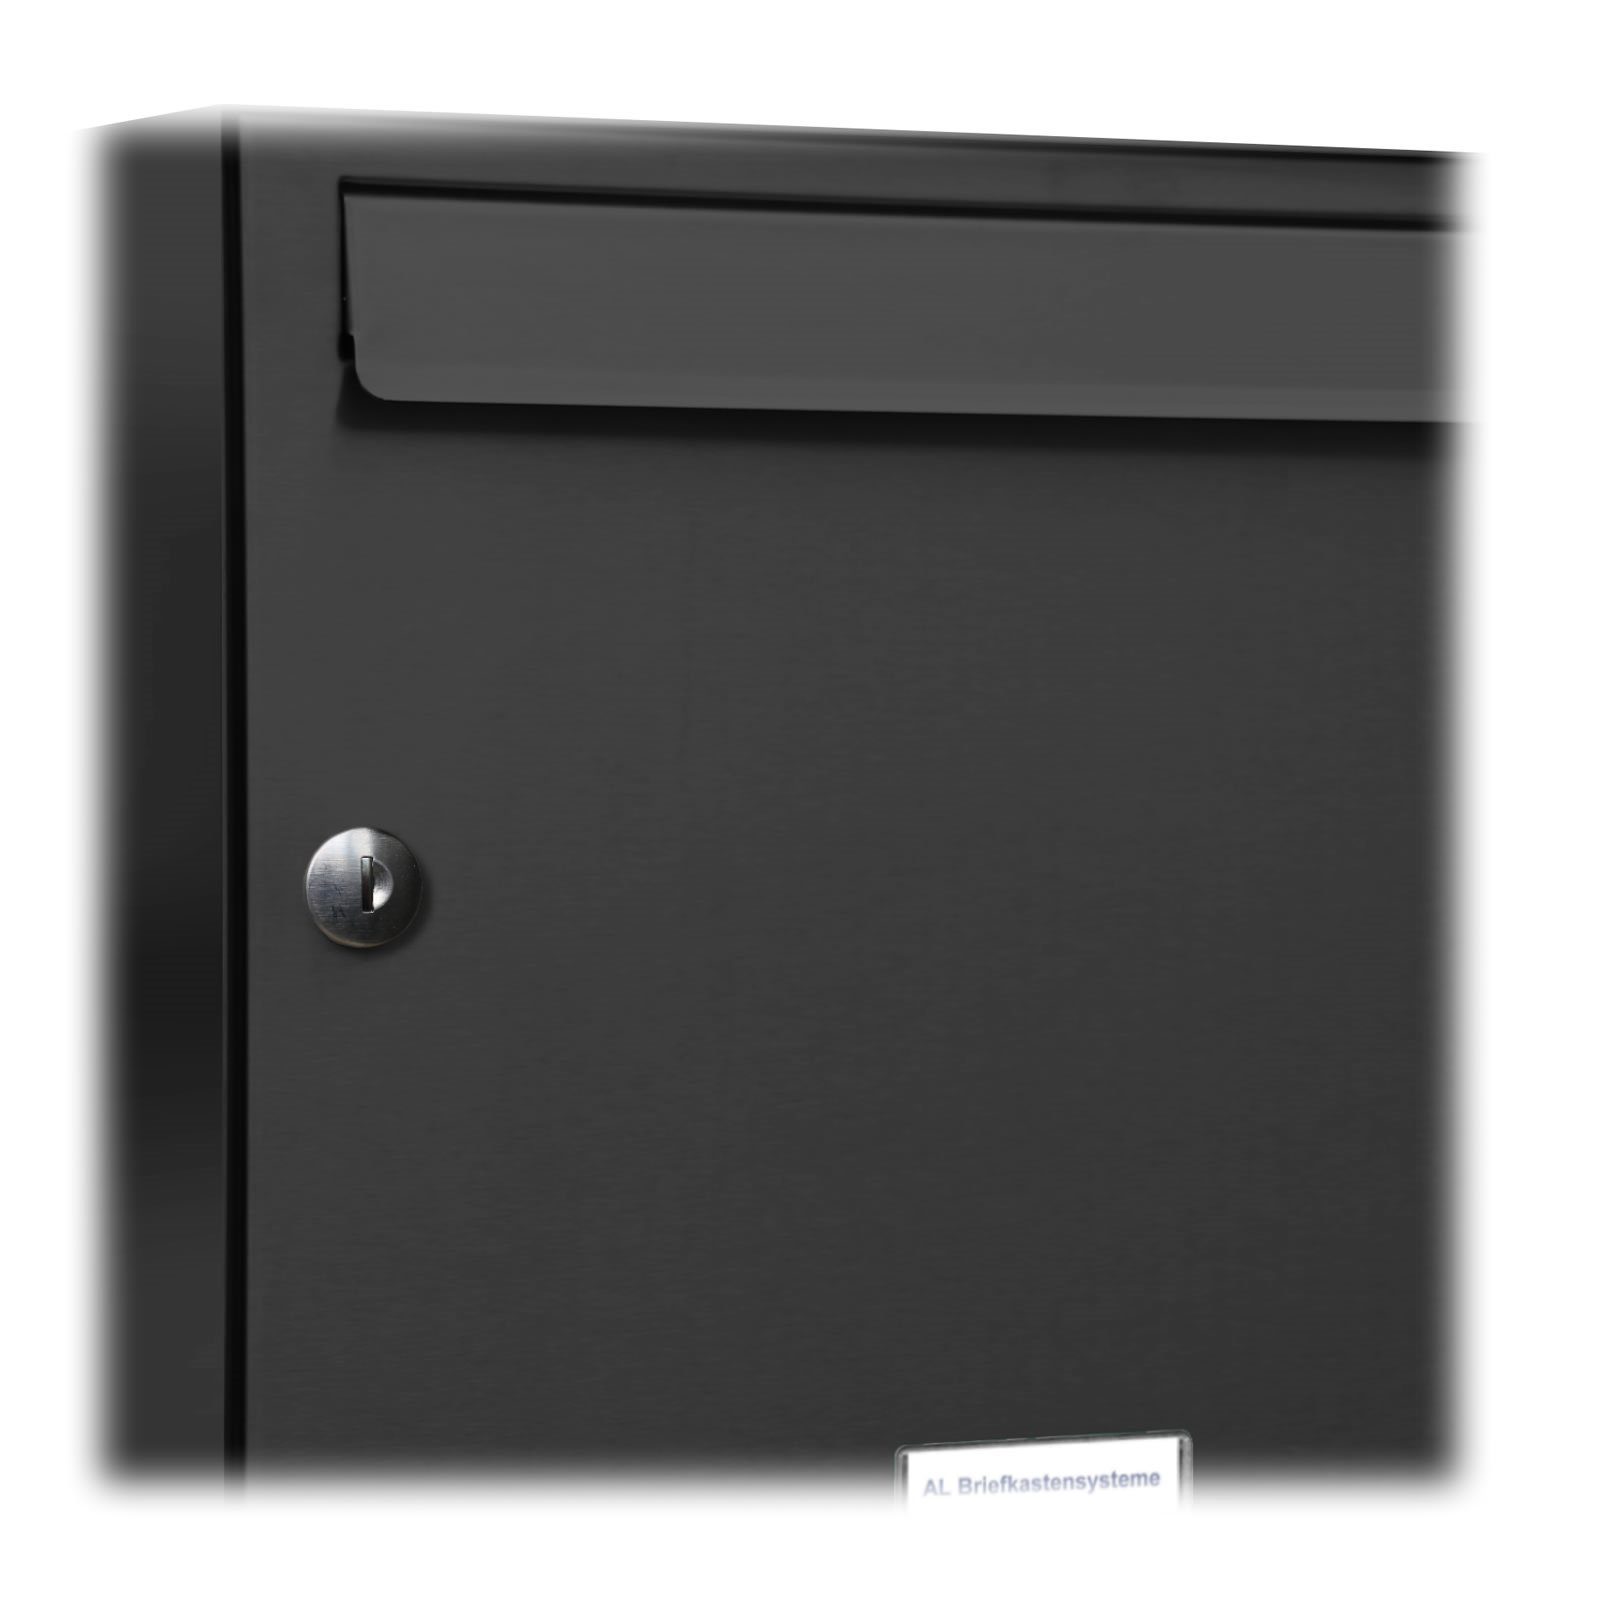 7016 AL Premium Briefkasten Farbe Rechts 3x1 RAL Klingel Briefkastensysteme Außen Wandbriefkasten 3er